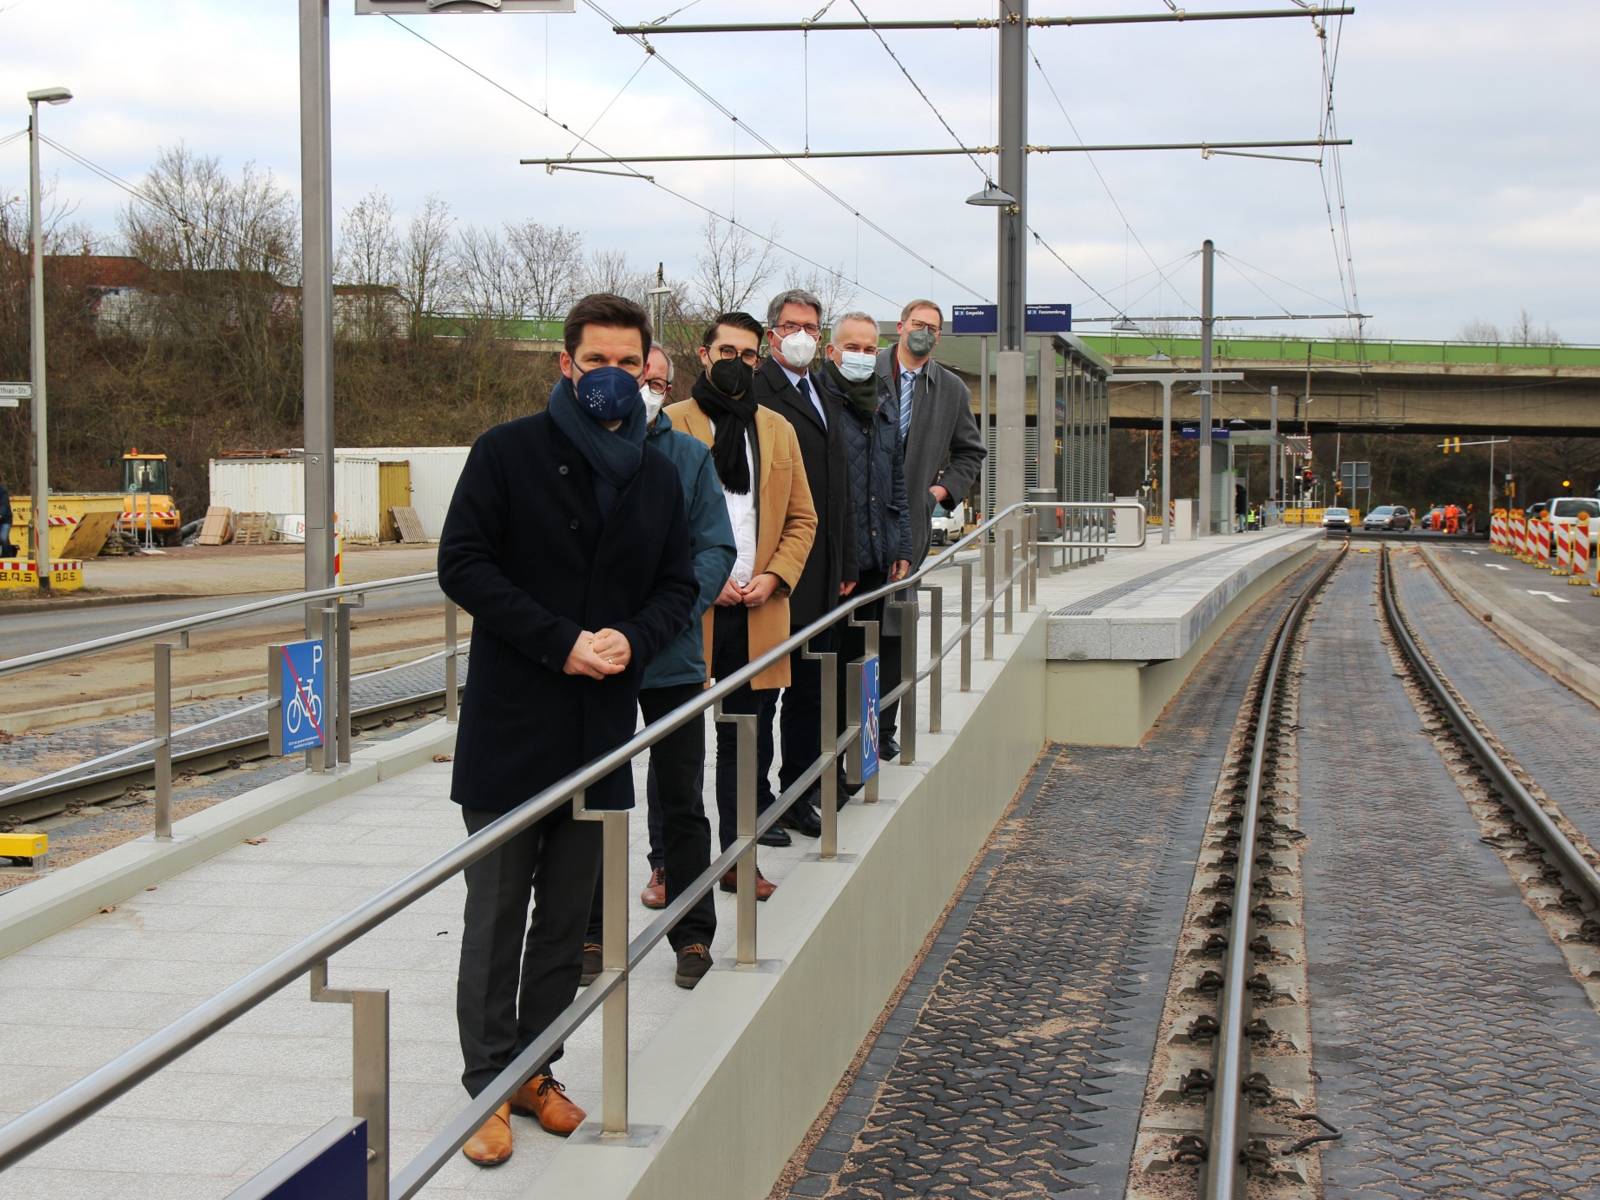 Sechs Personen auf dem barrierefreien Aufgang zu einem neuen Hochbahnsteig im Verkehrsnetz Hannovers.